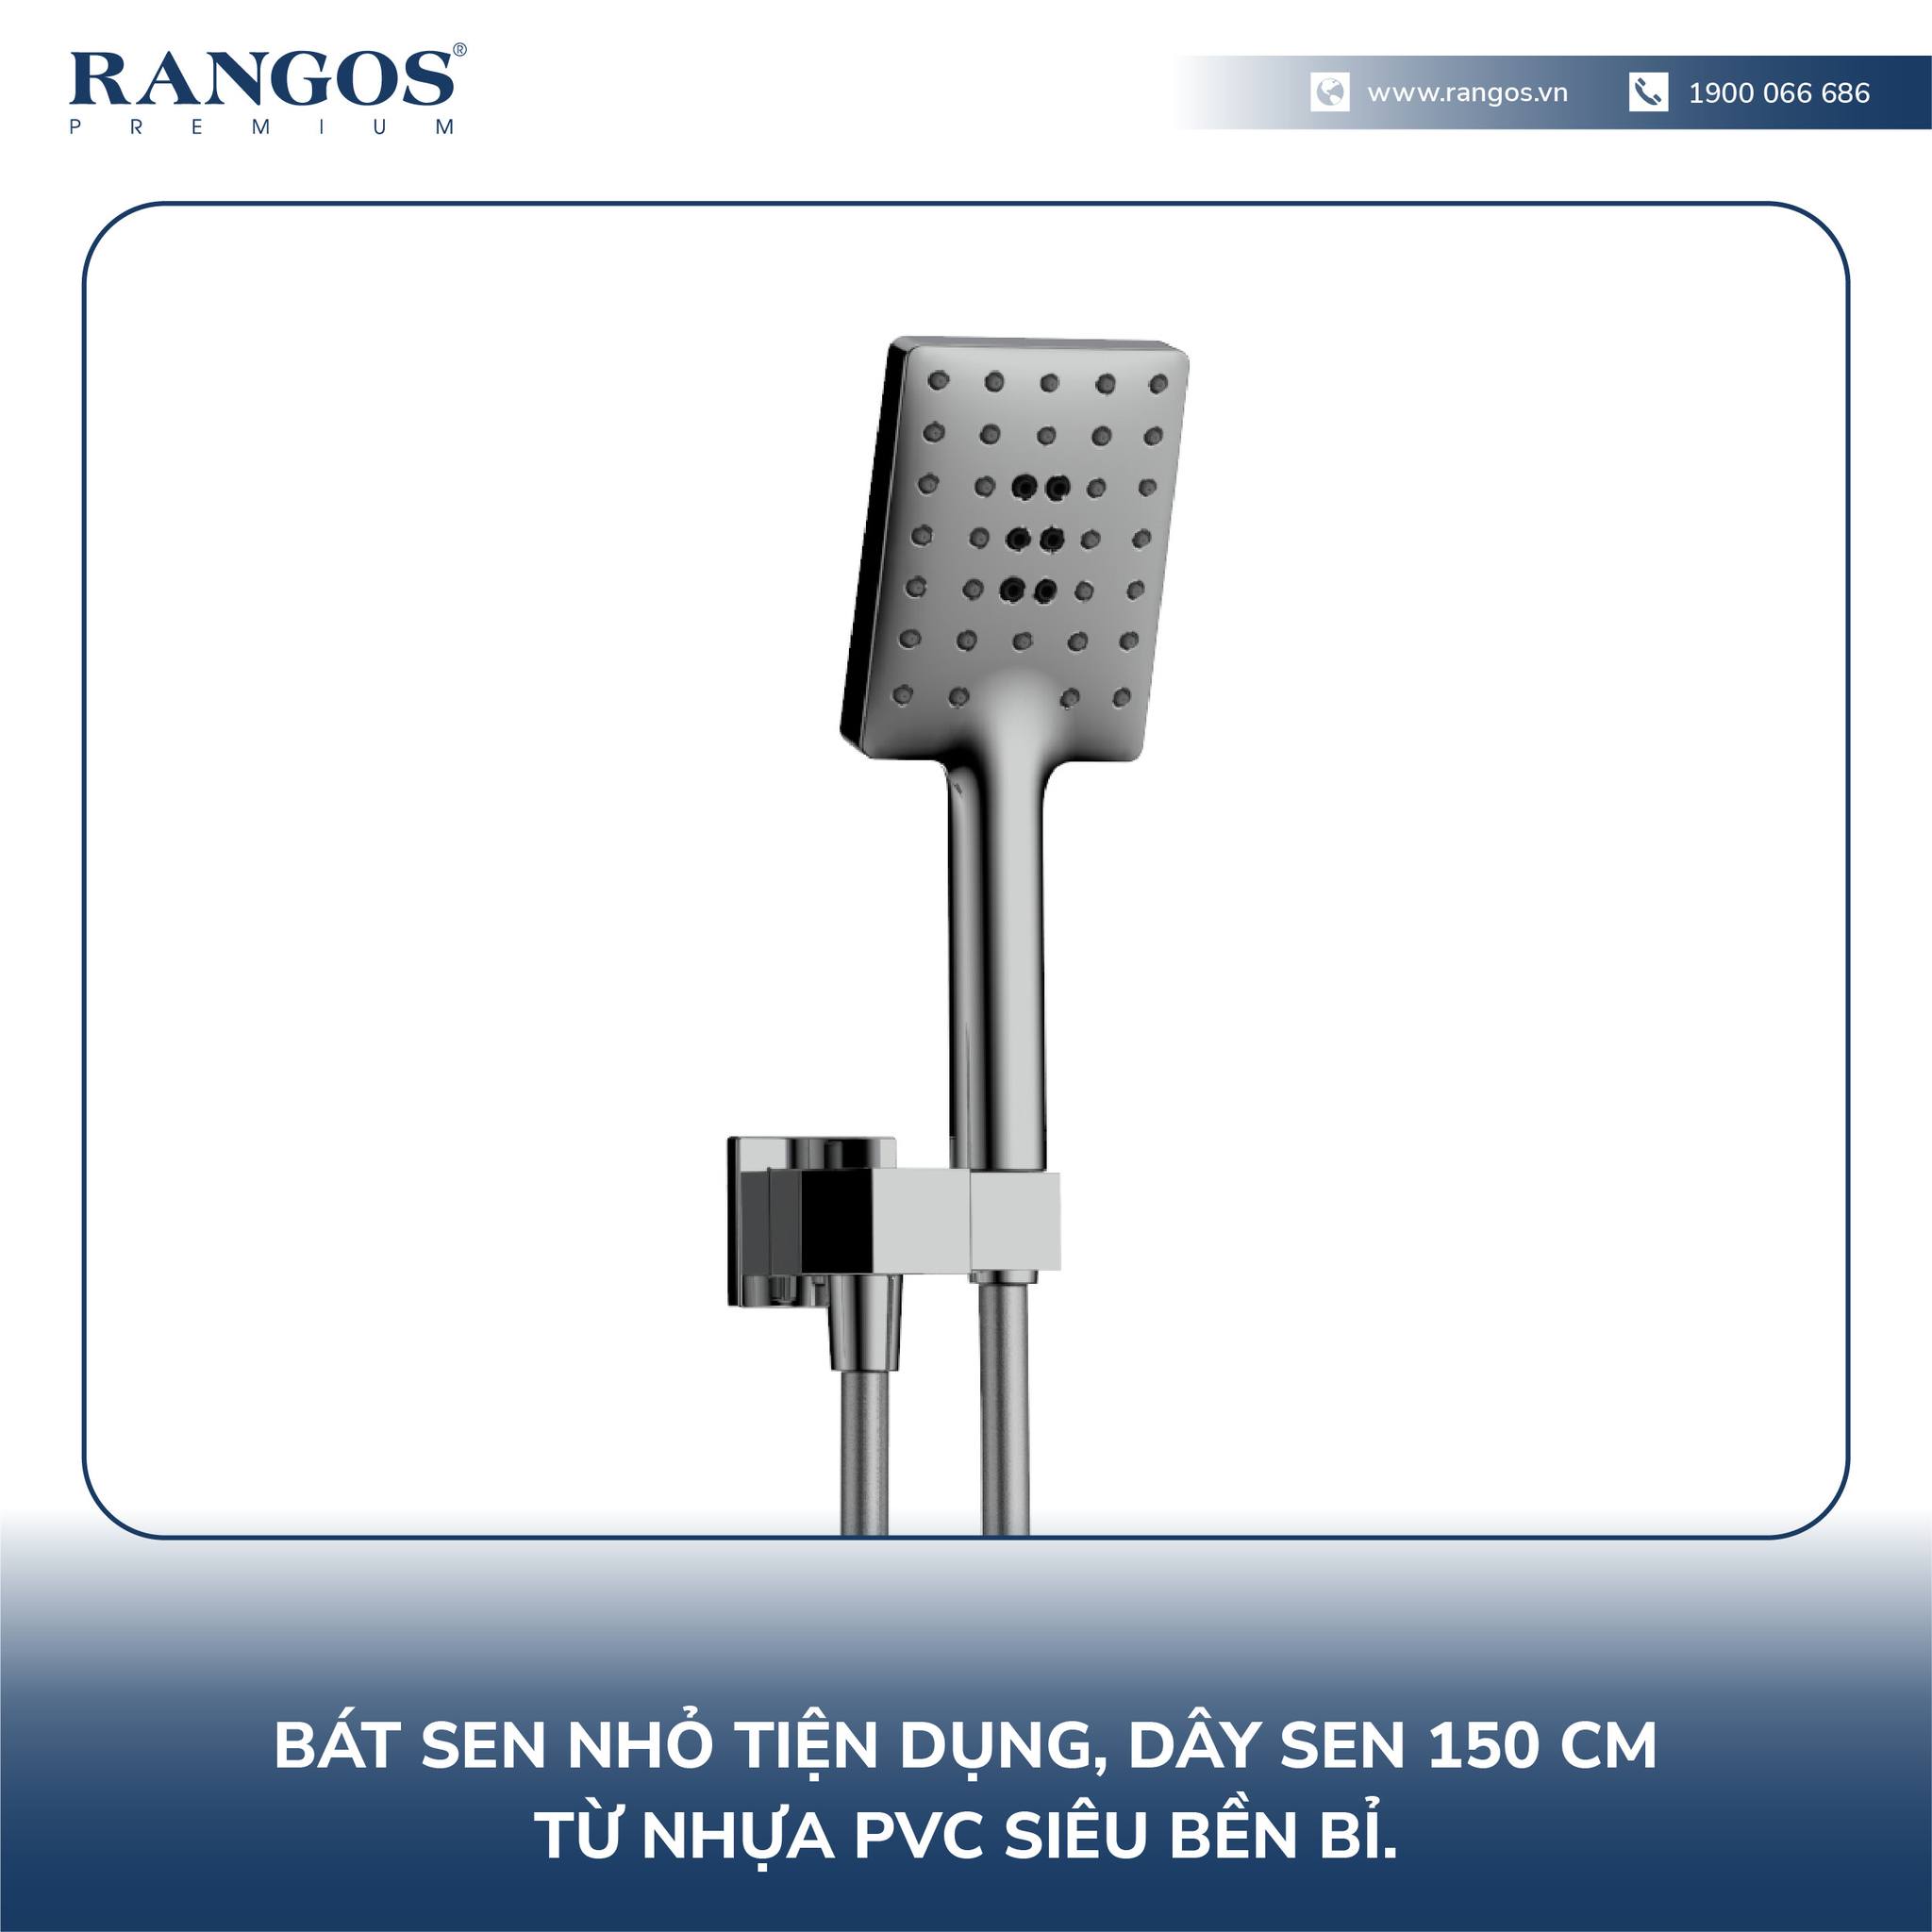 Sen âm trần nhiệt độ cao cấp Rangos RG-3100